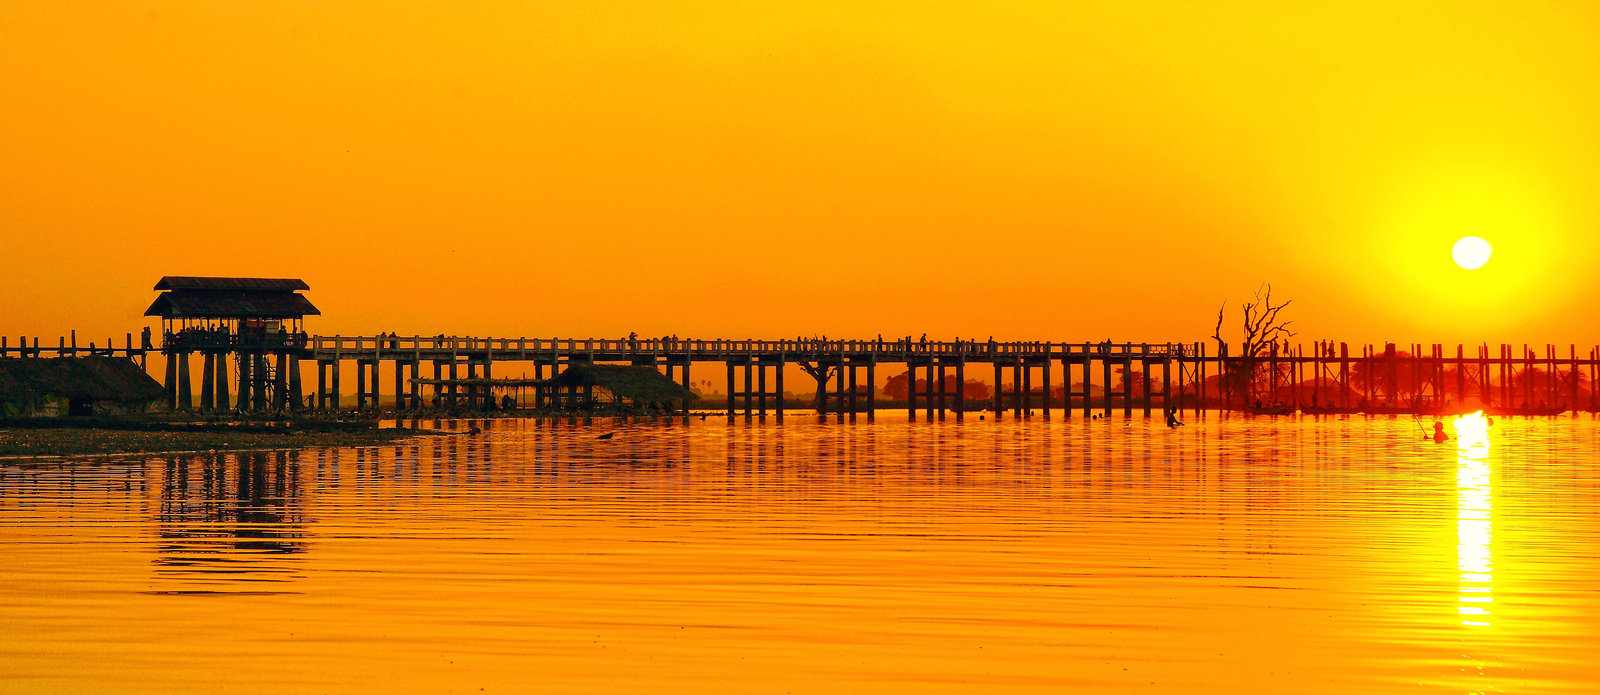 u_bein_bridge_at_sunset_3_by_citizenfresh-d3ex55l.jpg